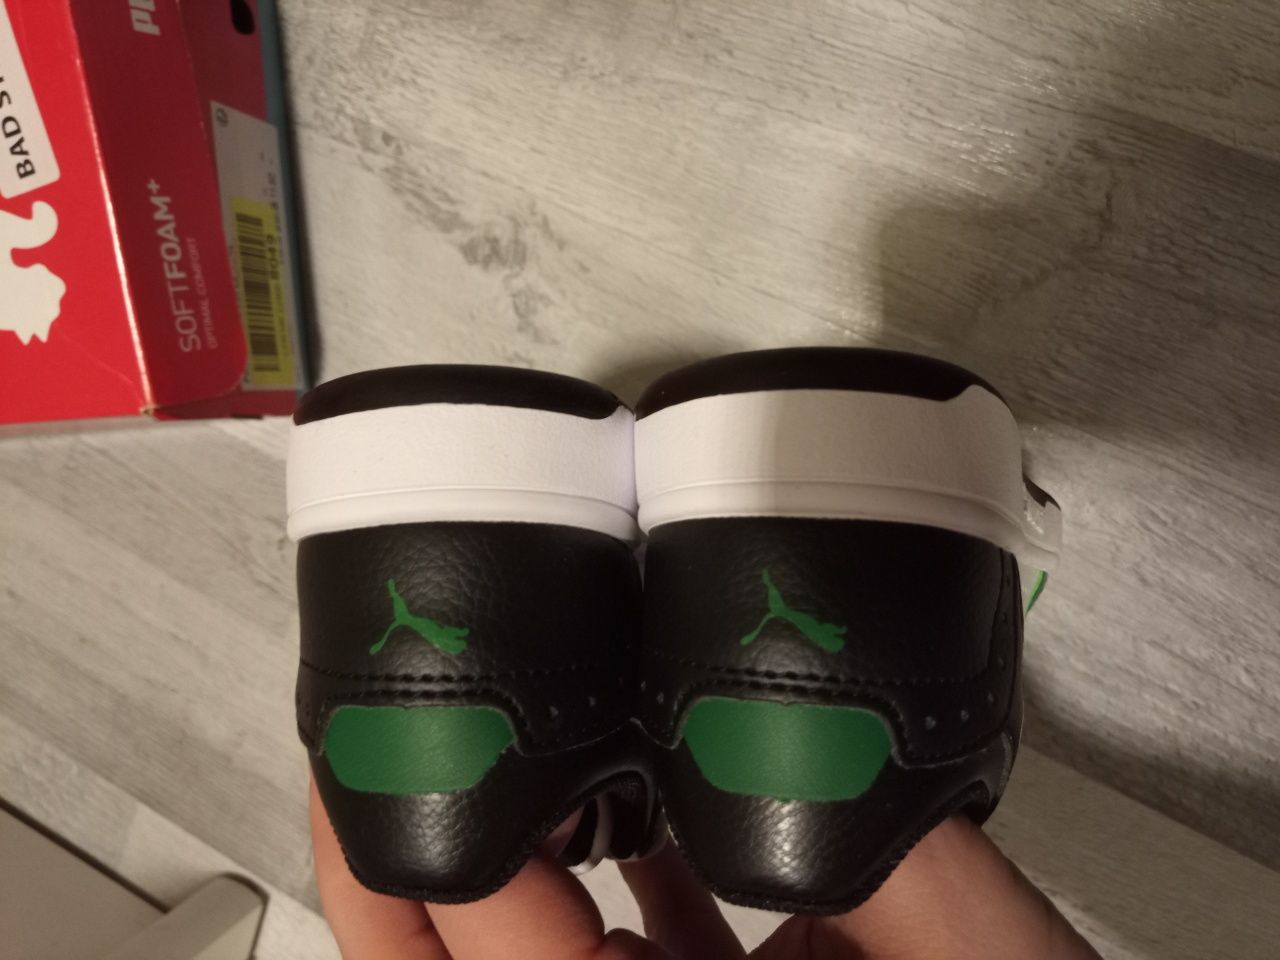 Wsuwane sneakersy puma rebound joy 28,6 wkładka ok 18,5 cm biało zielo